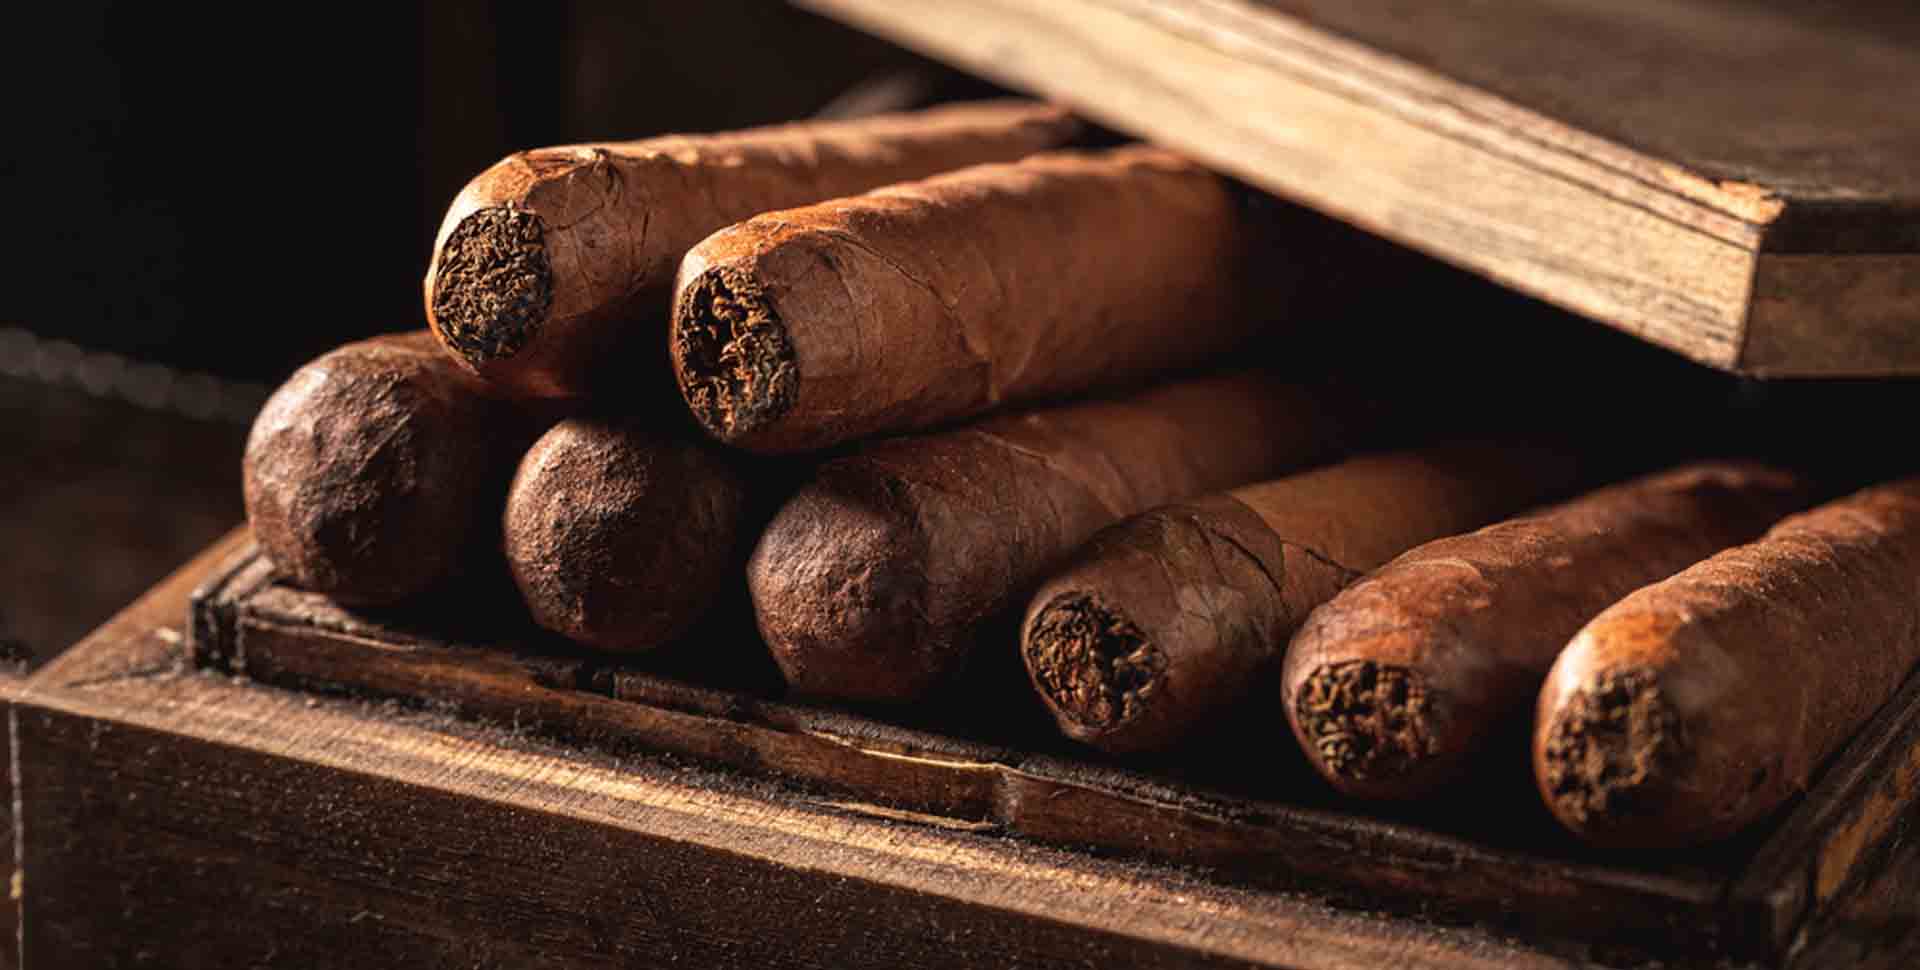 Cigary balenia - cigary v drevenej krabici - detail